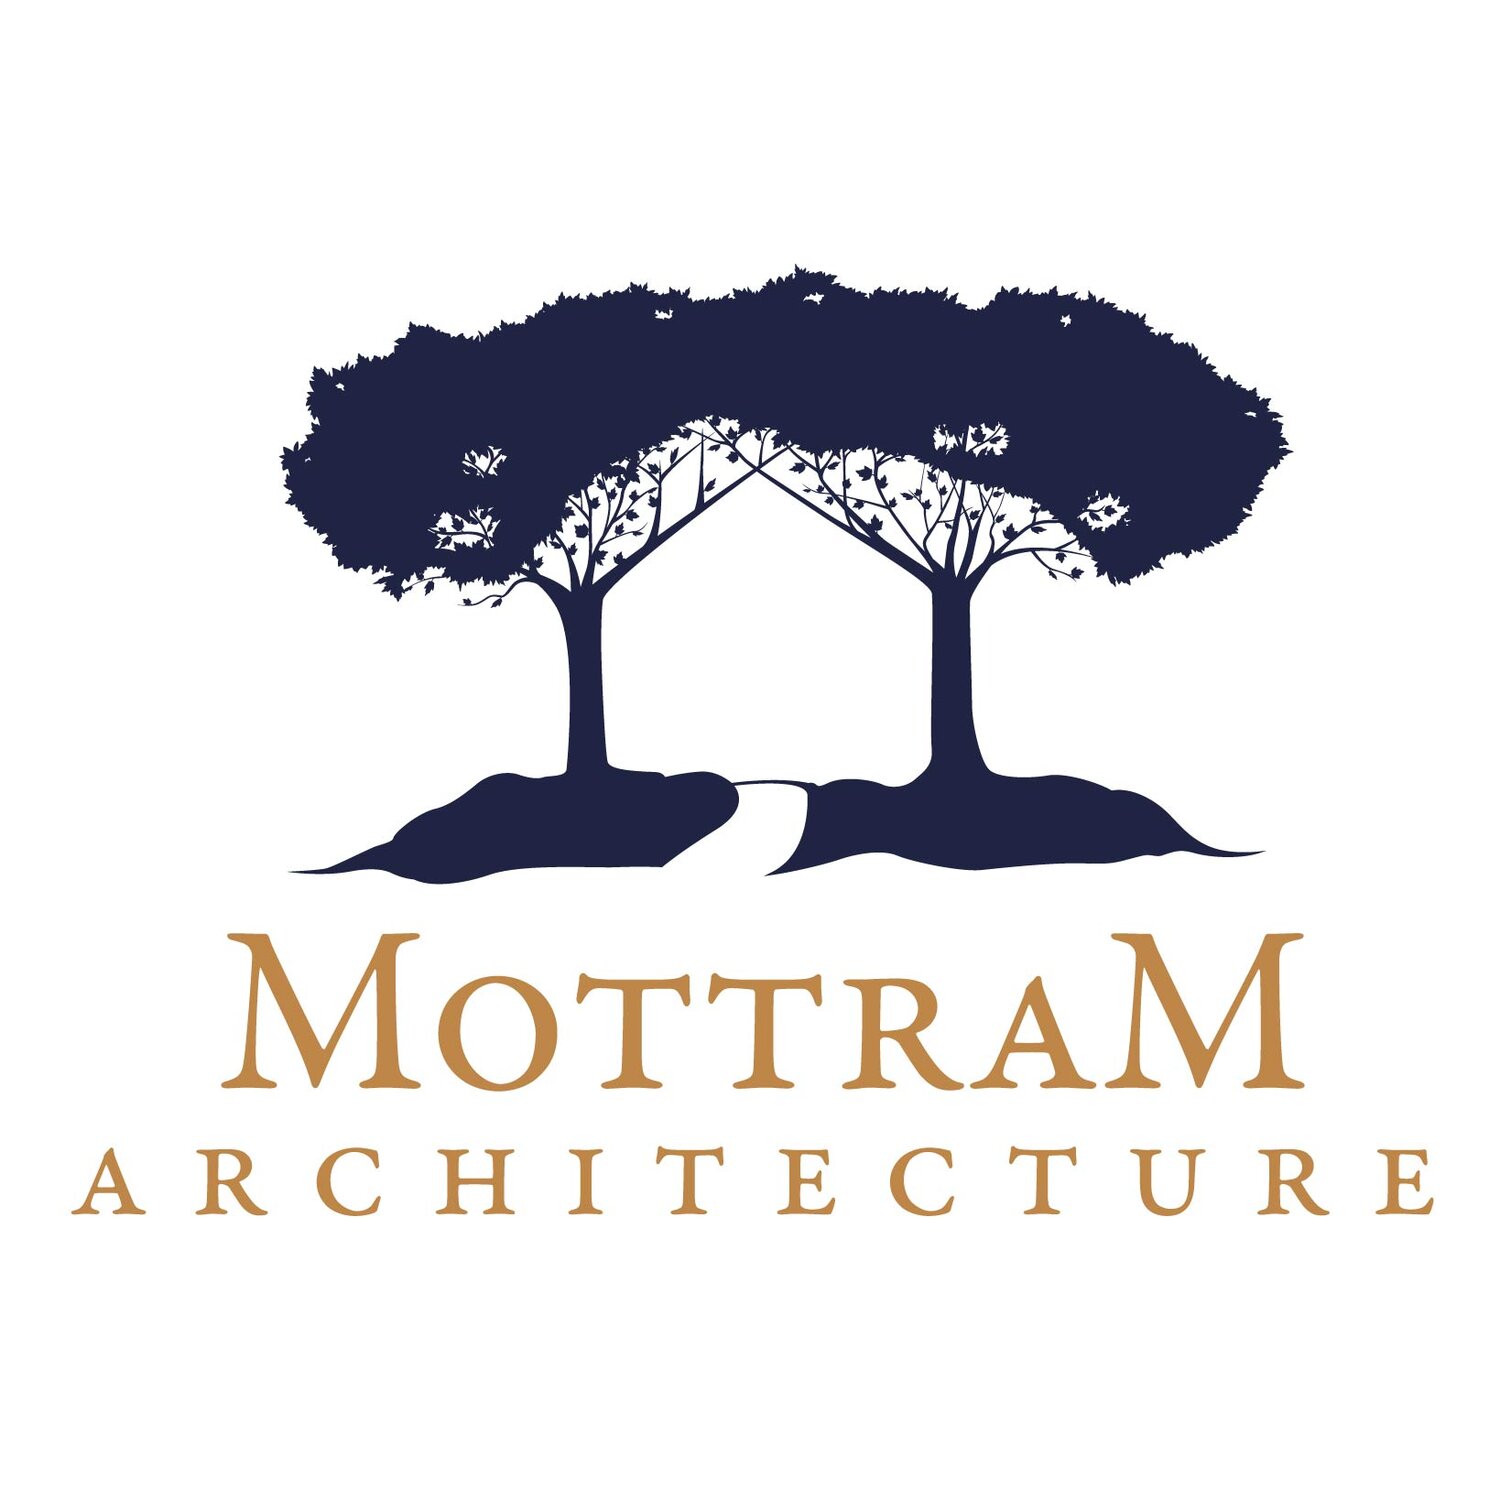 MOTTRAM ARCHITECTURE